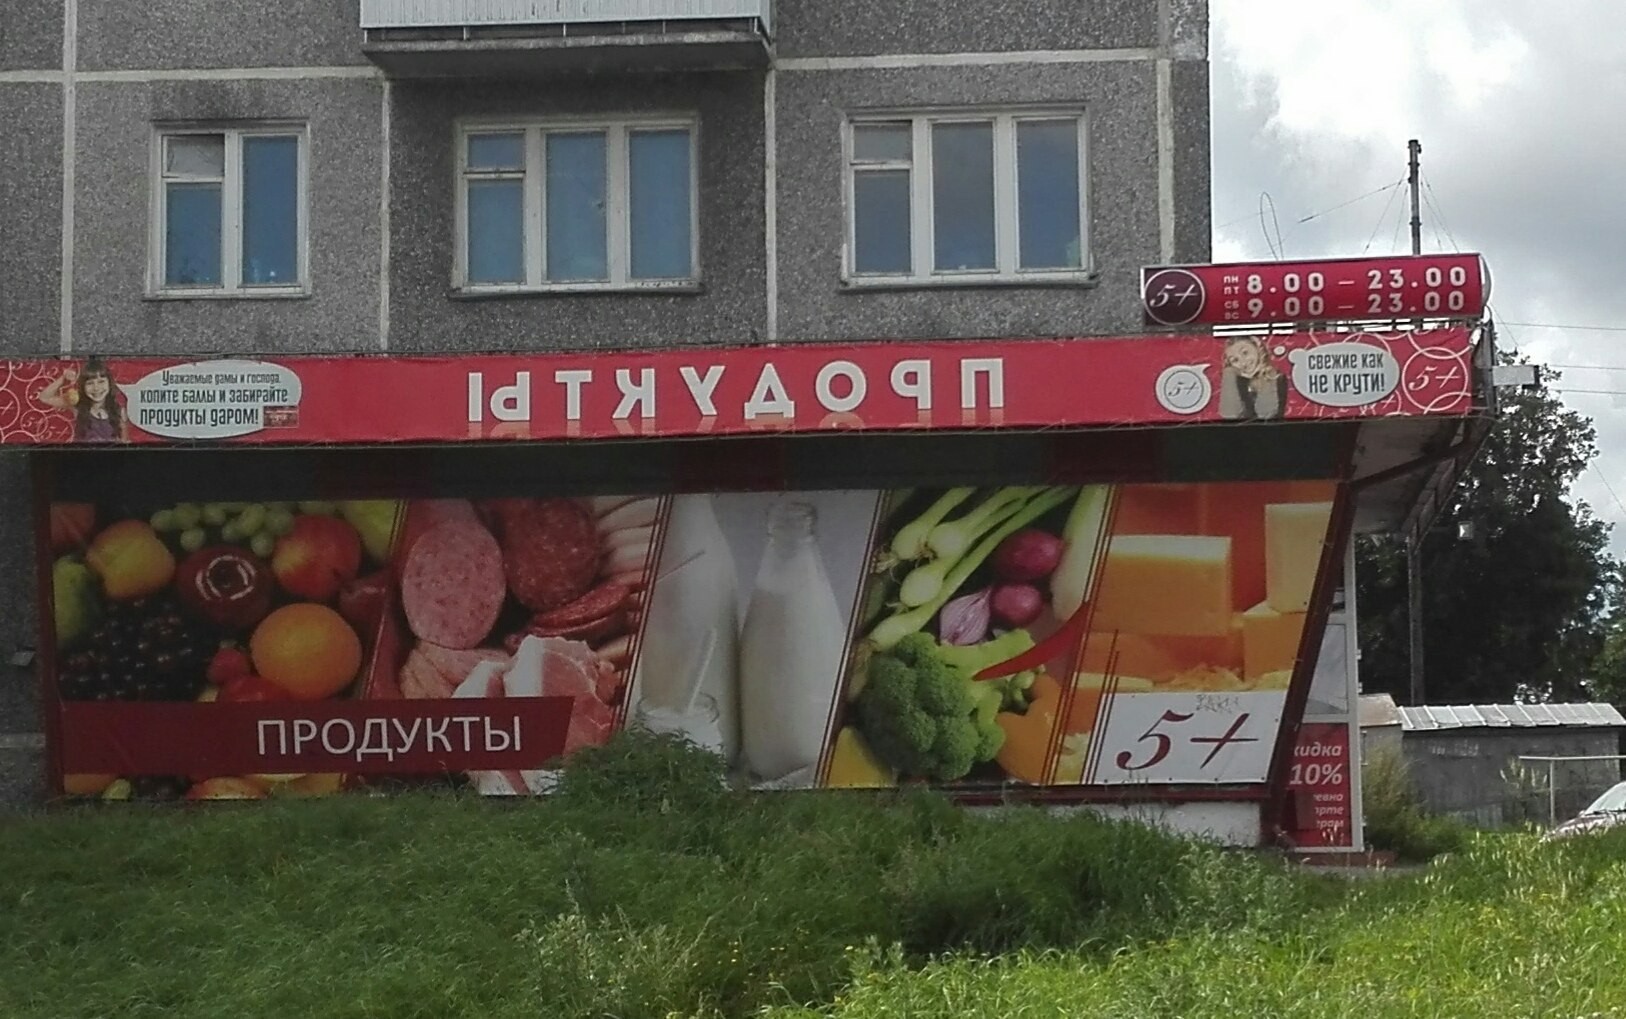 Рекламная вывеска продукты